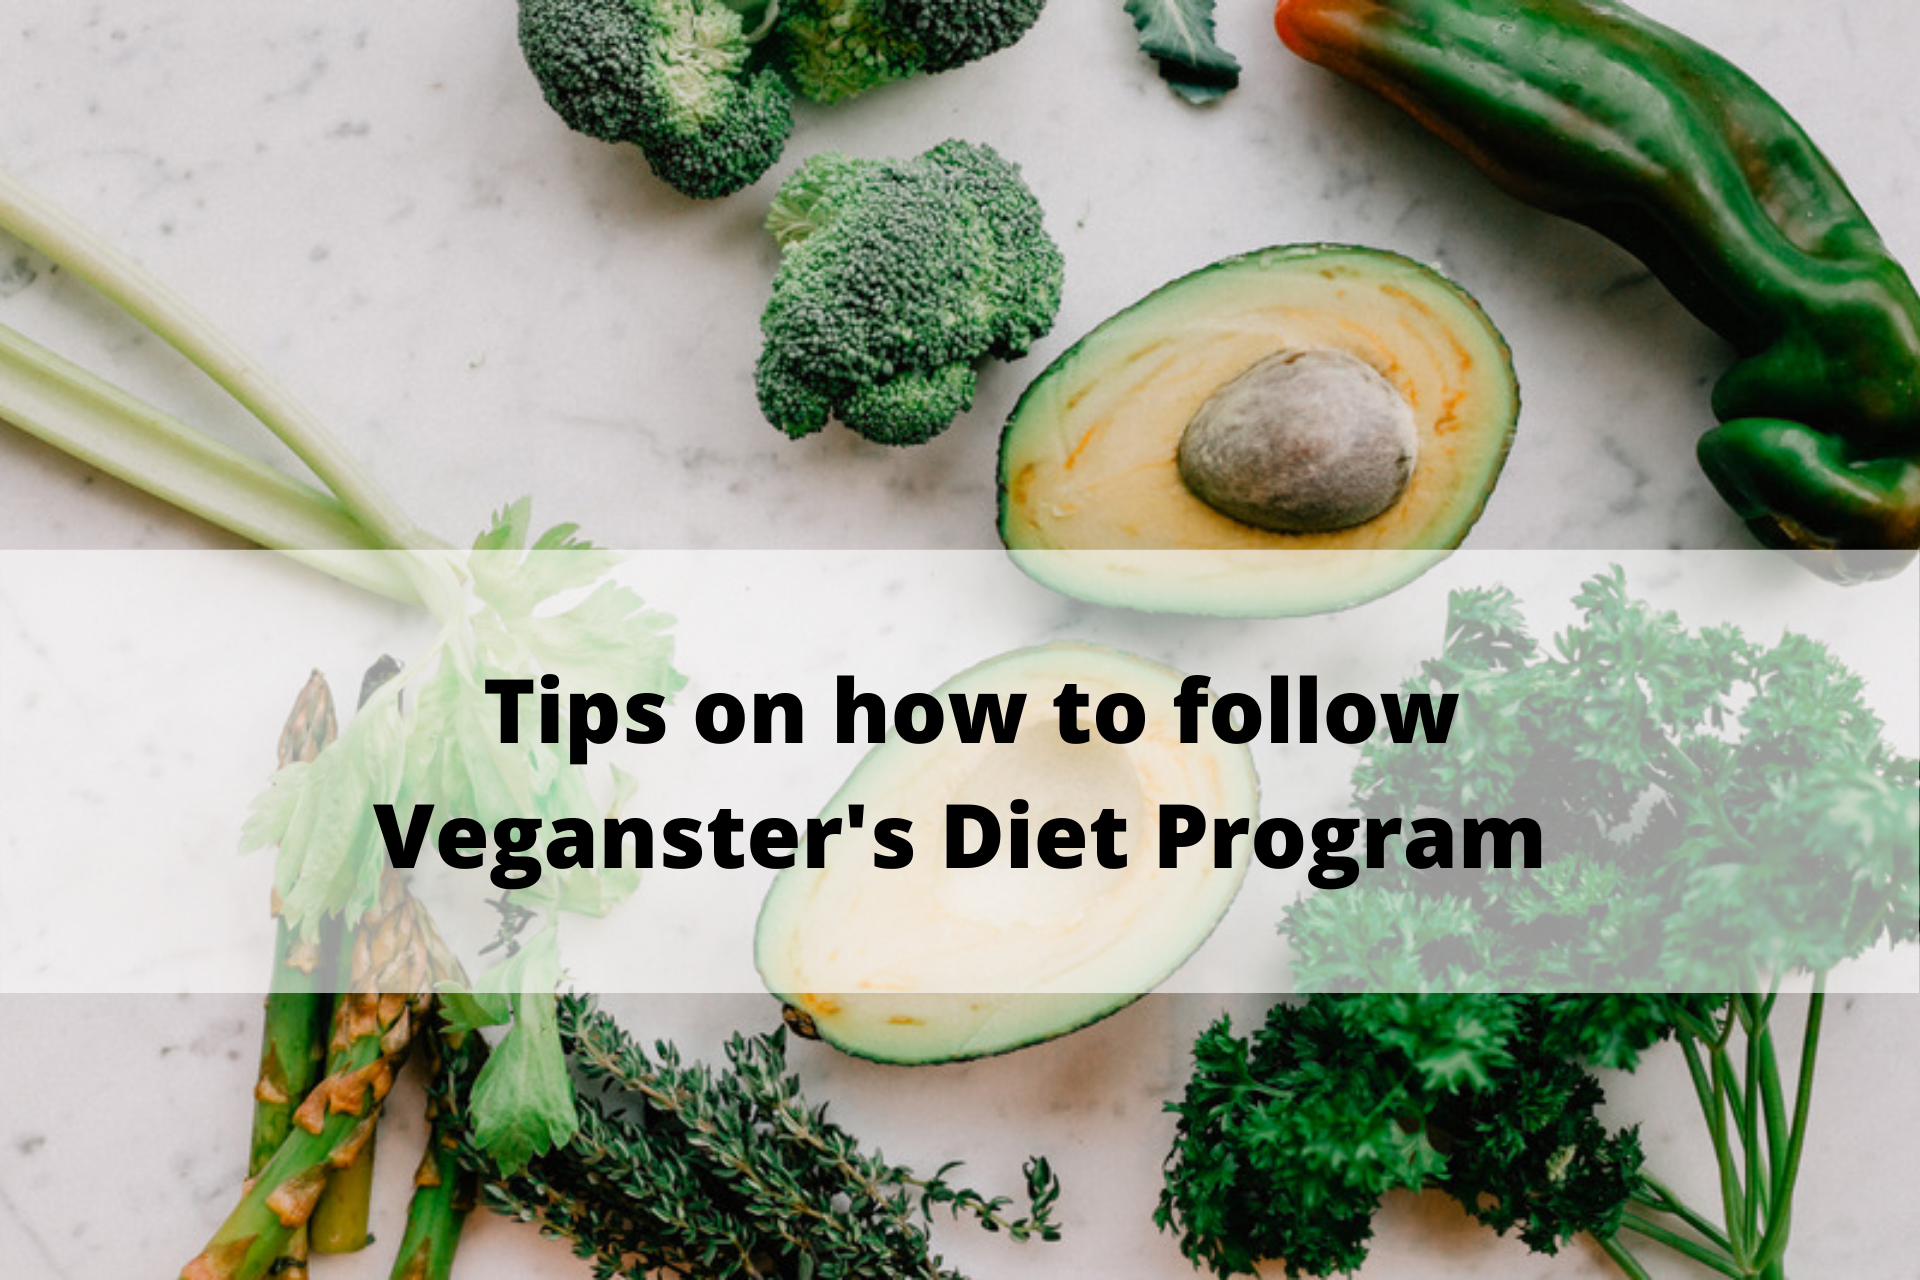 Tips on how to follow Veganster’s Diet Program